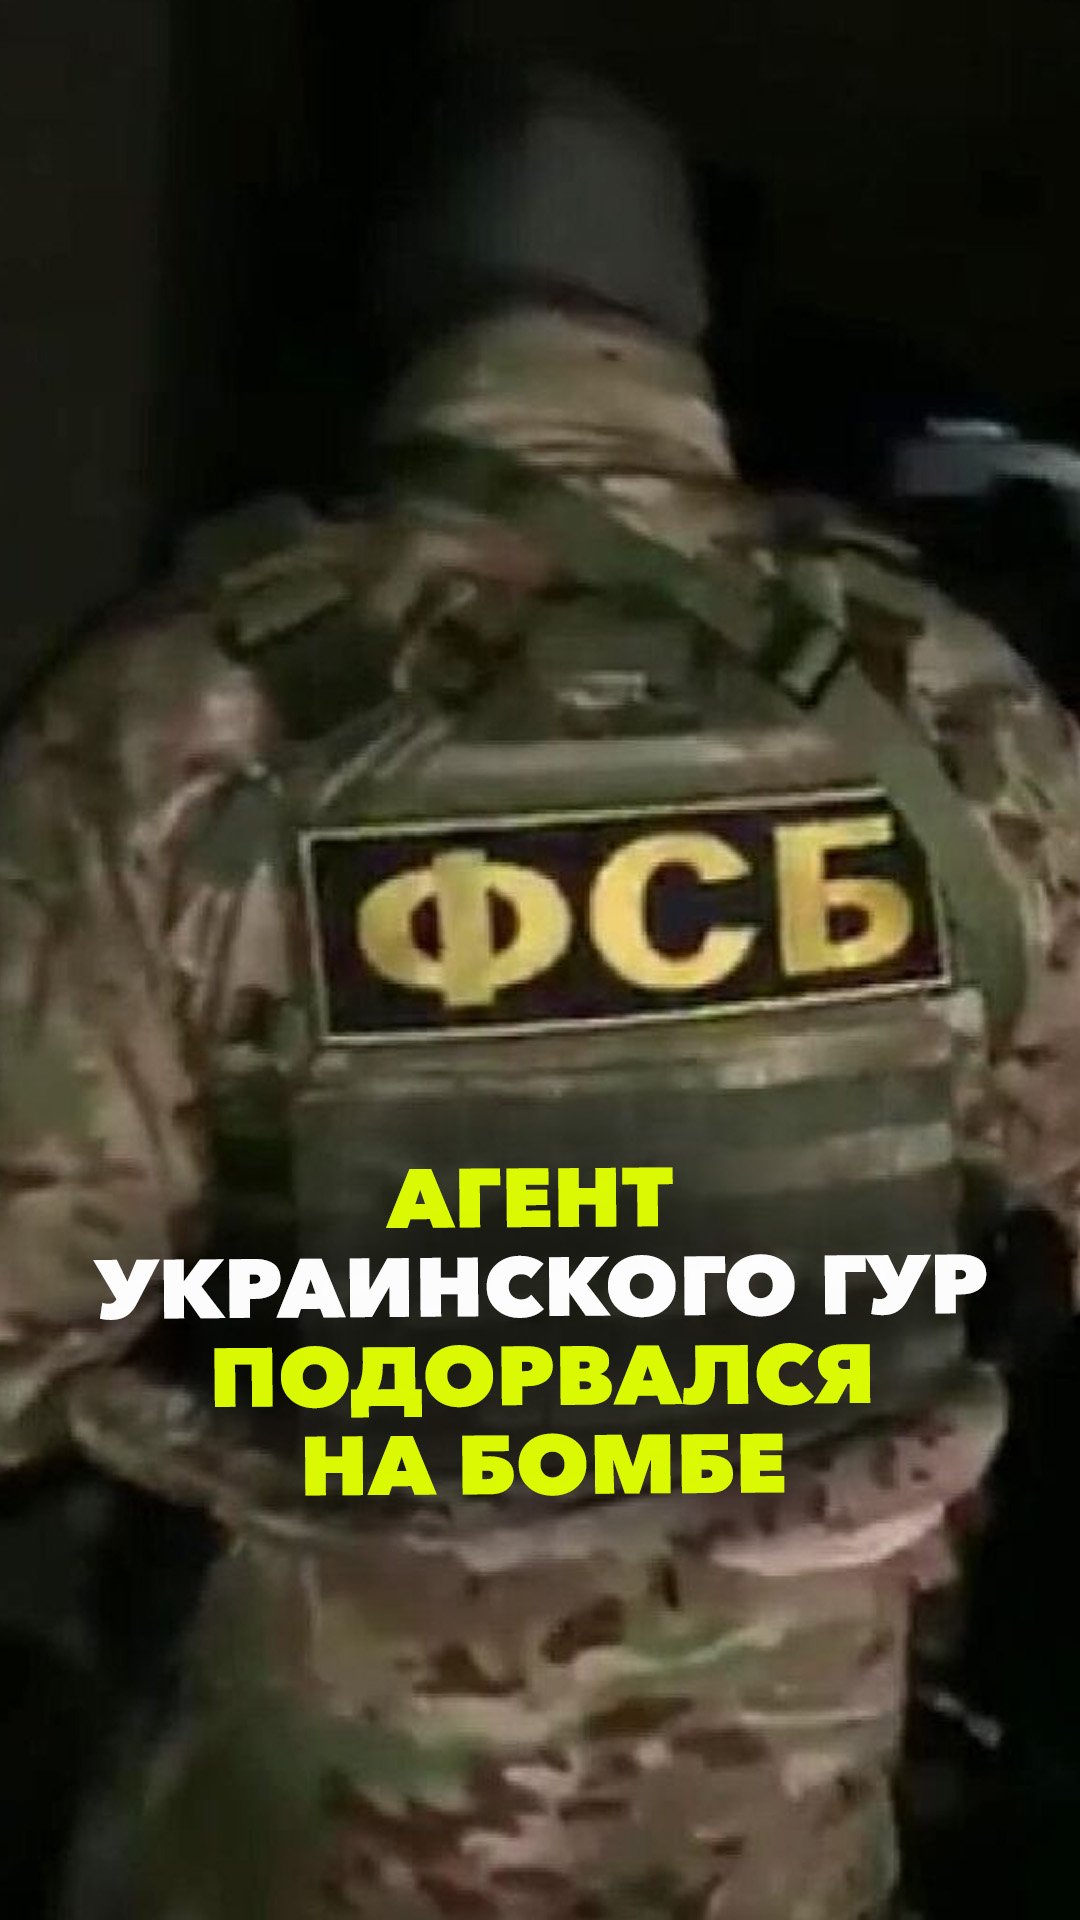 В Крыму агент украинского ГУР подорвался на самодельной бомбе. ФСБ предотвратило серию терактов